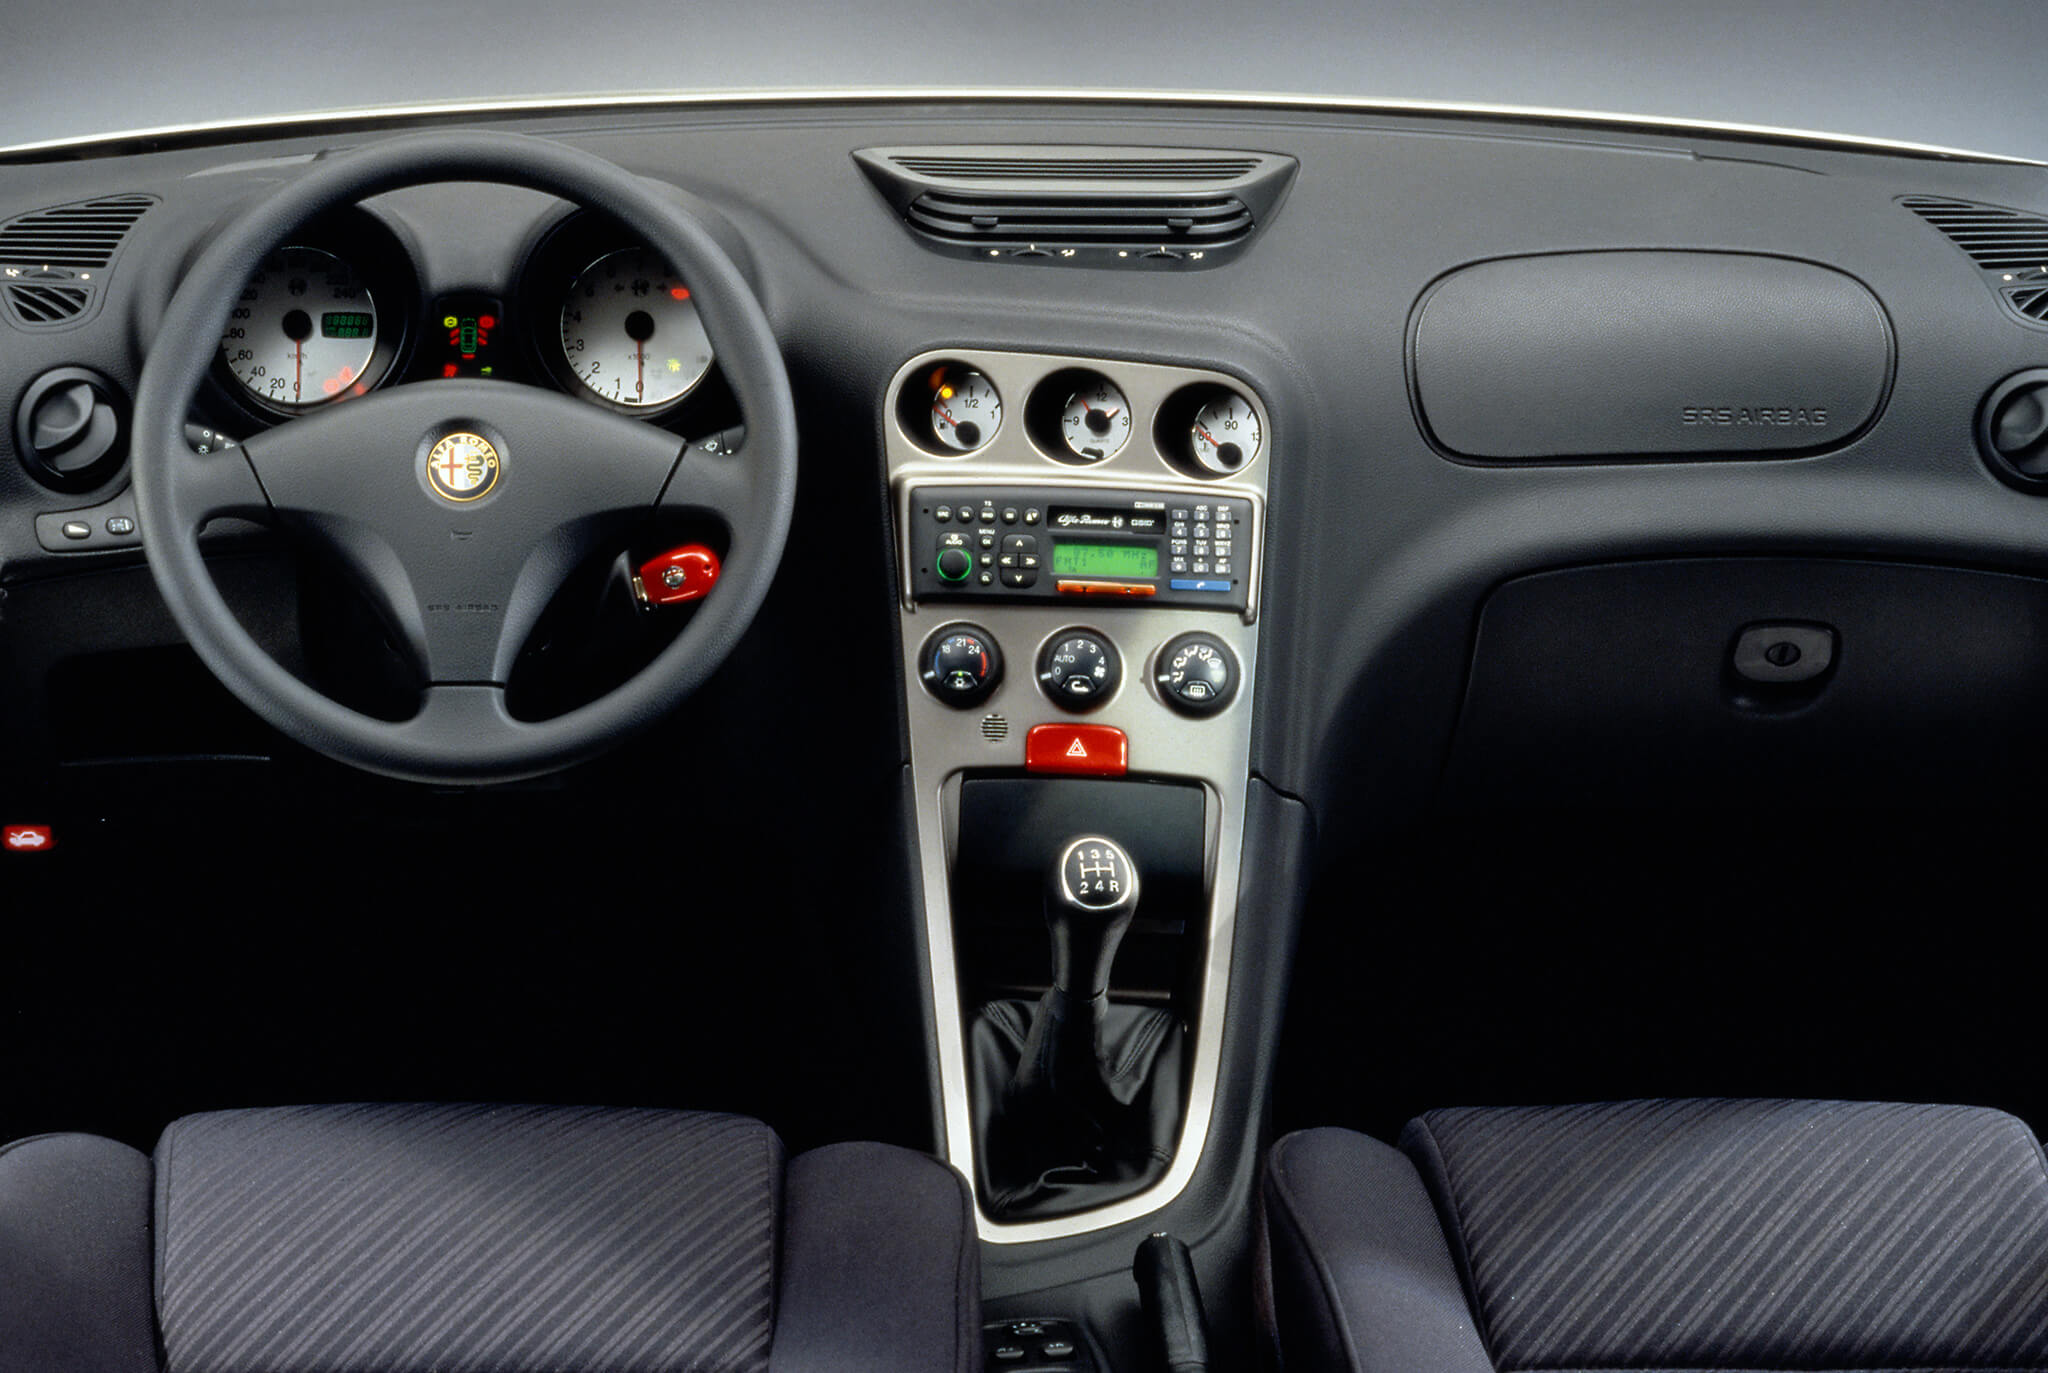 Alfa Romeo 156 interior